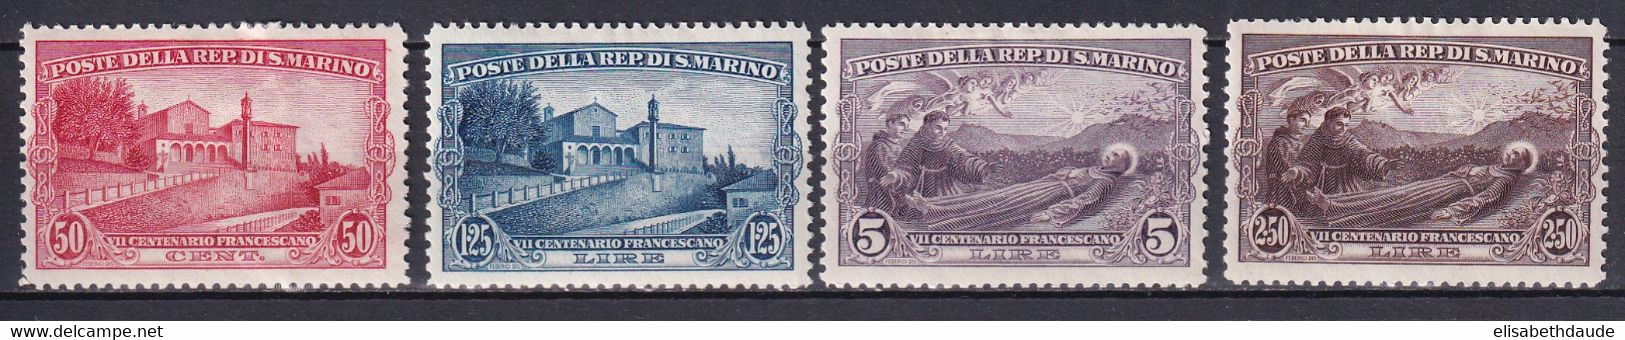 SAINT MARIN - 1928 - YVERT N°137/140 * MLH - COTE = 80 EUROS - - Unused Stamps